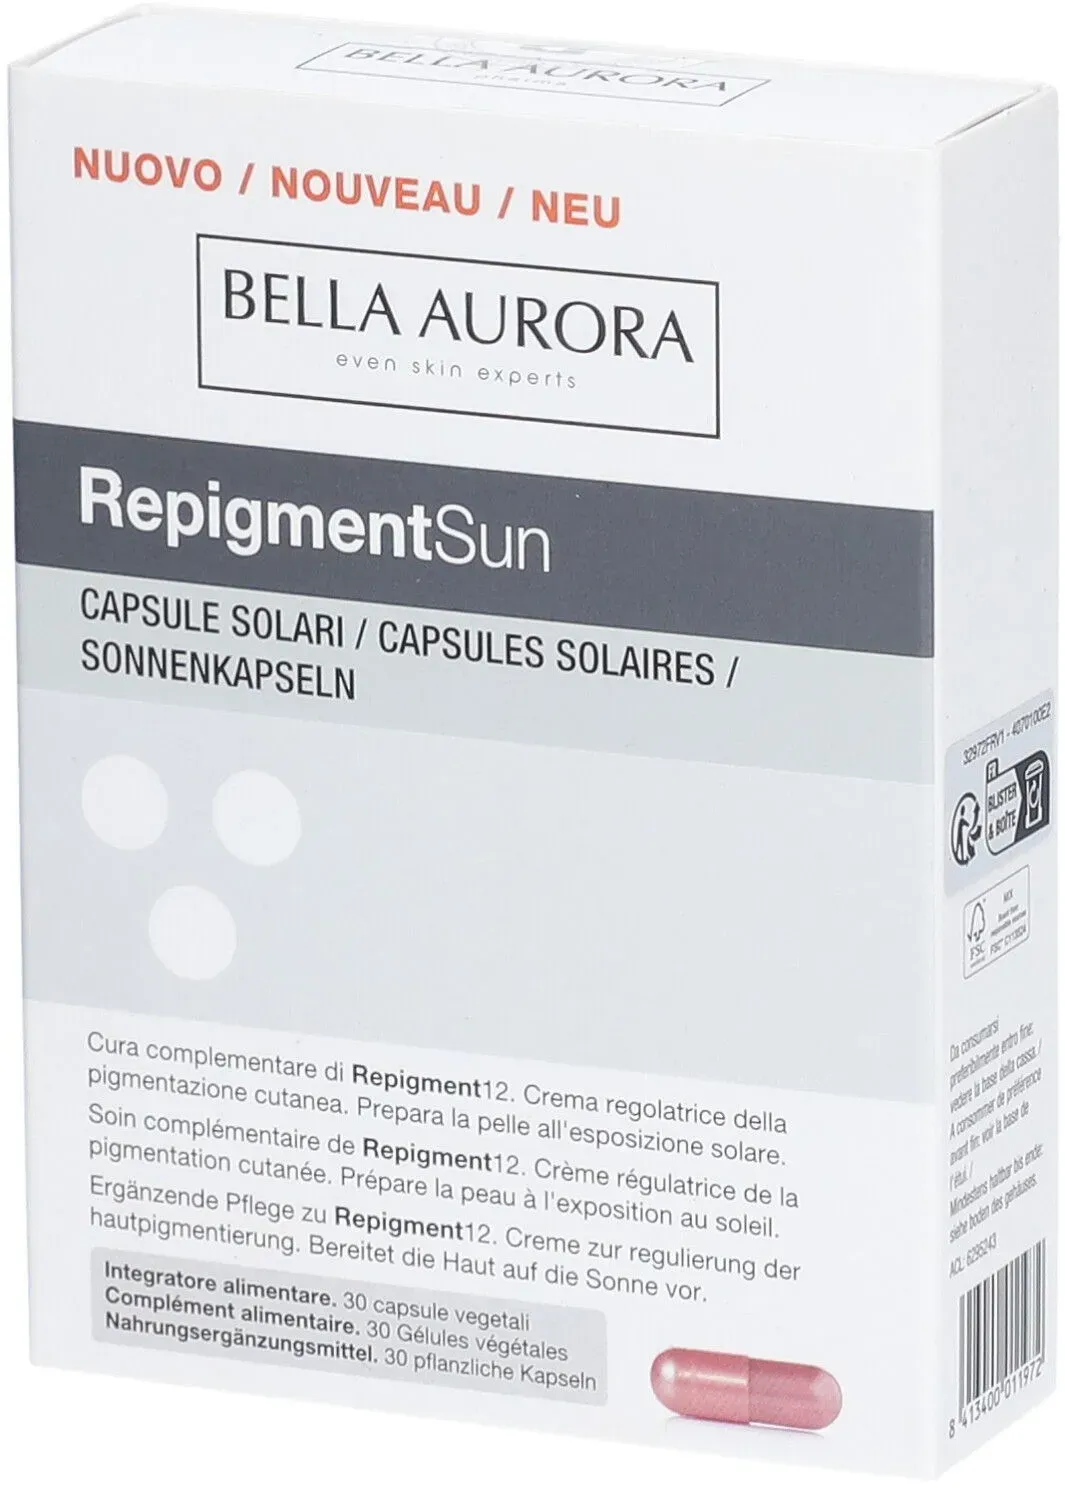 BELLA AURORA REPIGMENTSUN CAPS 30 capsule(s)